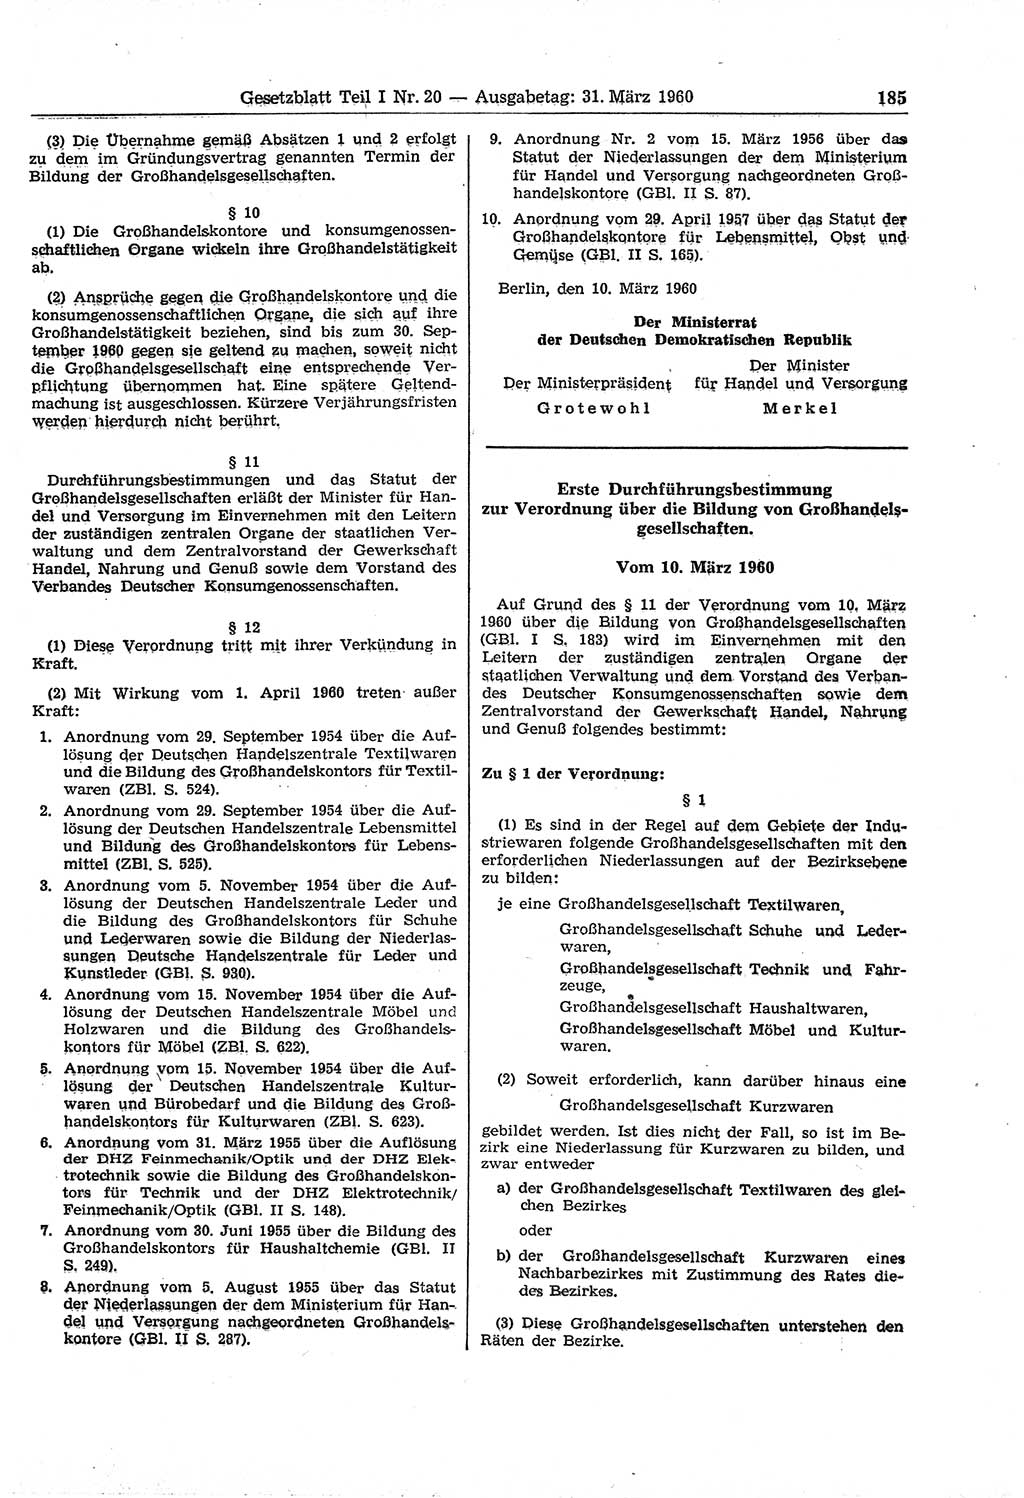 Gesetzblatt (GBl.) der Deutschen Demokratischen Republik (DDR) Teil Ⅰ 1960, Seite 185 (GBl. DDR Ⅰ 1960, S. 185)